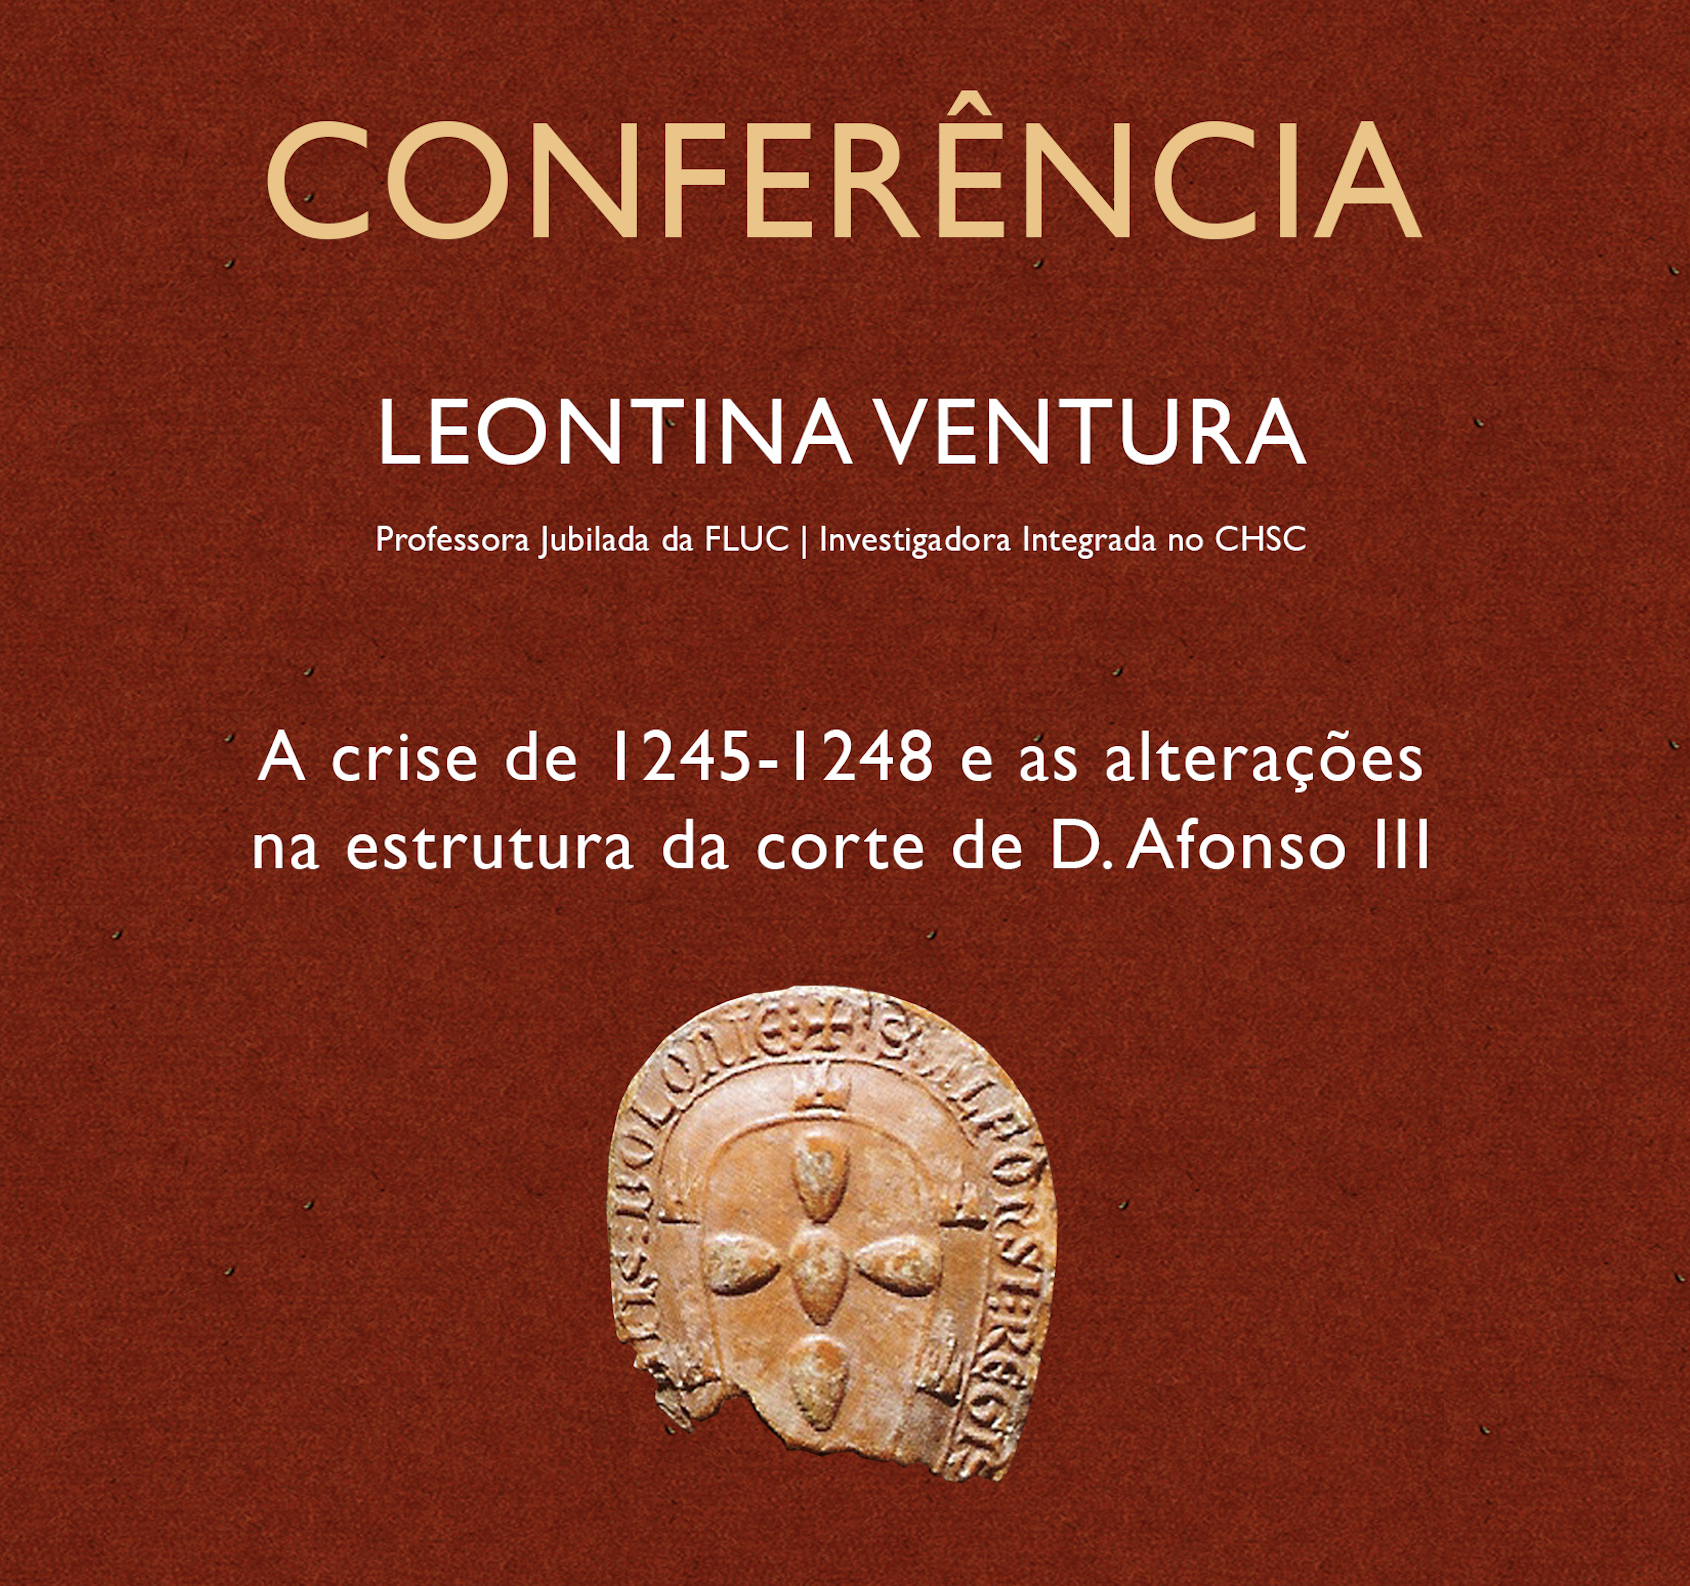 Conference by Leontina Ventura: A crise de 1245-1248 e as alterações na estrutura da corte de D. Afonso III